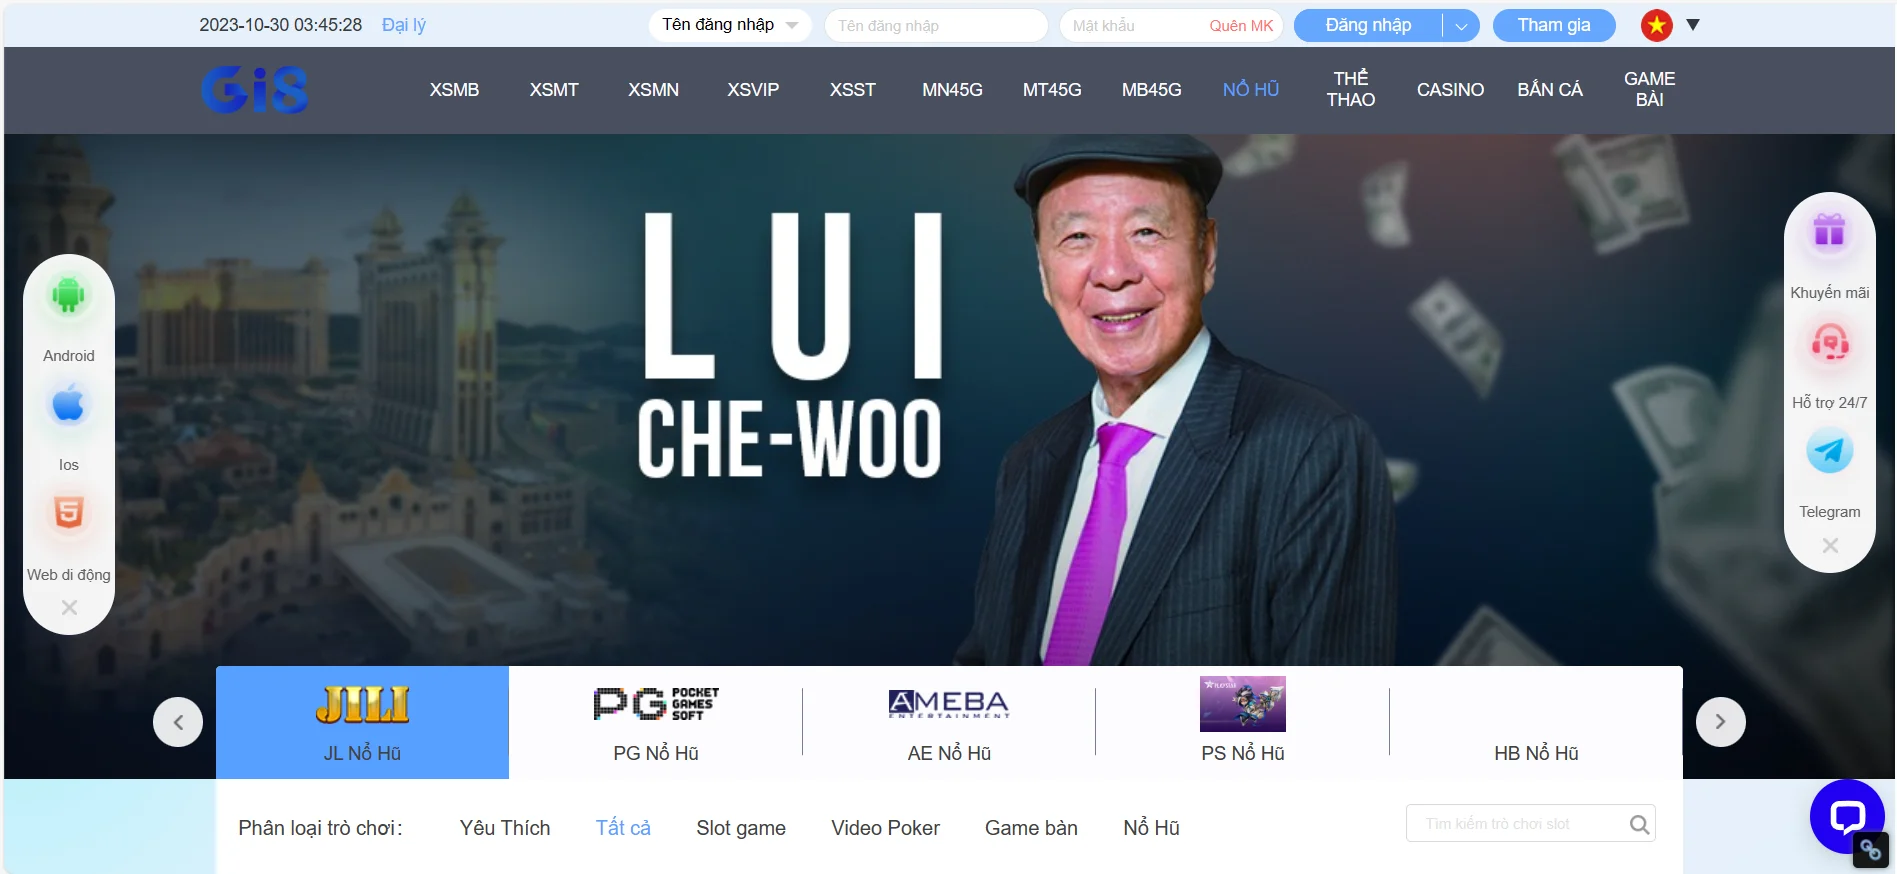 Lui Che Woo đóng góp vai trò quan trọng cho sự thành công của Gi8.team